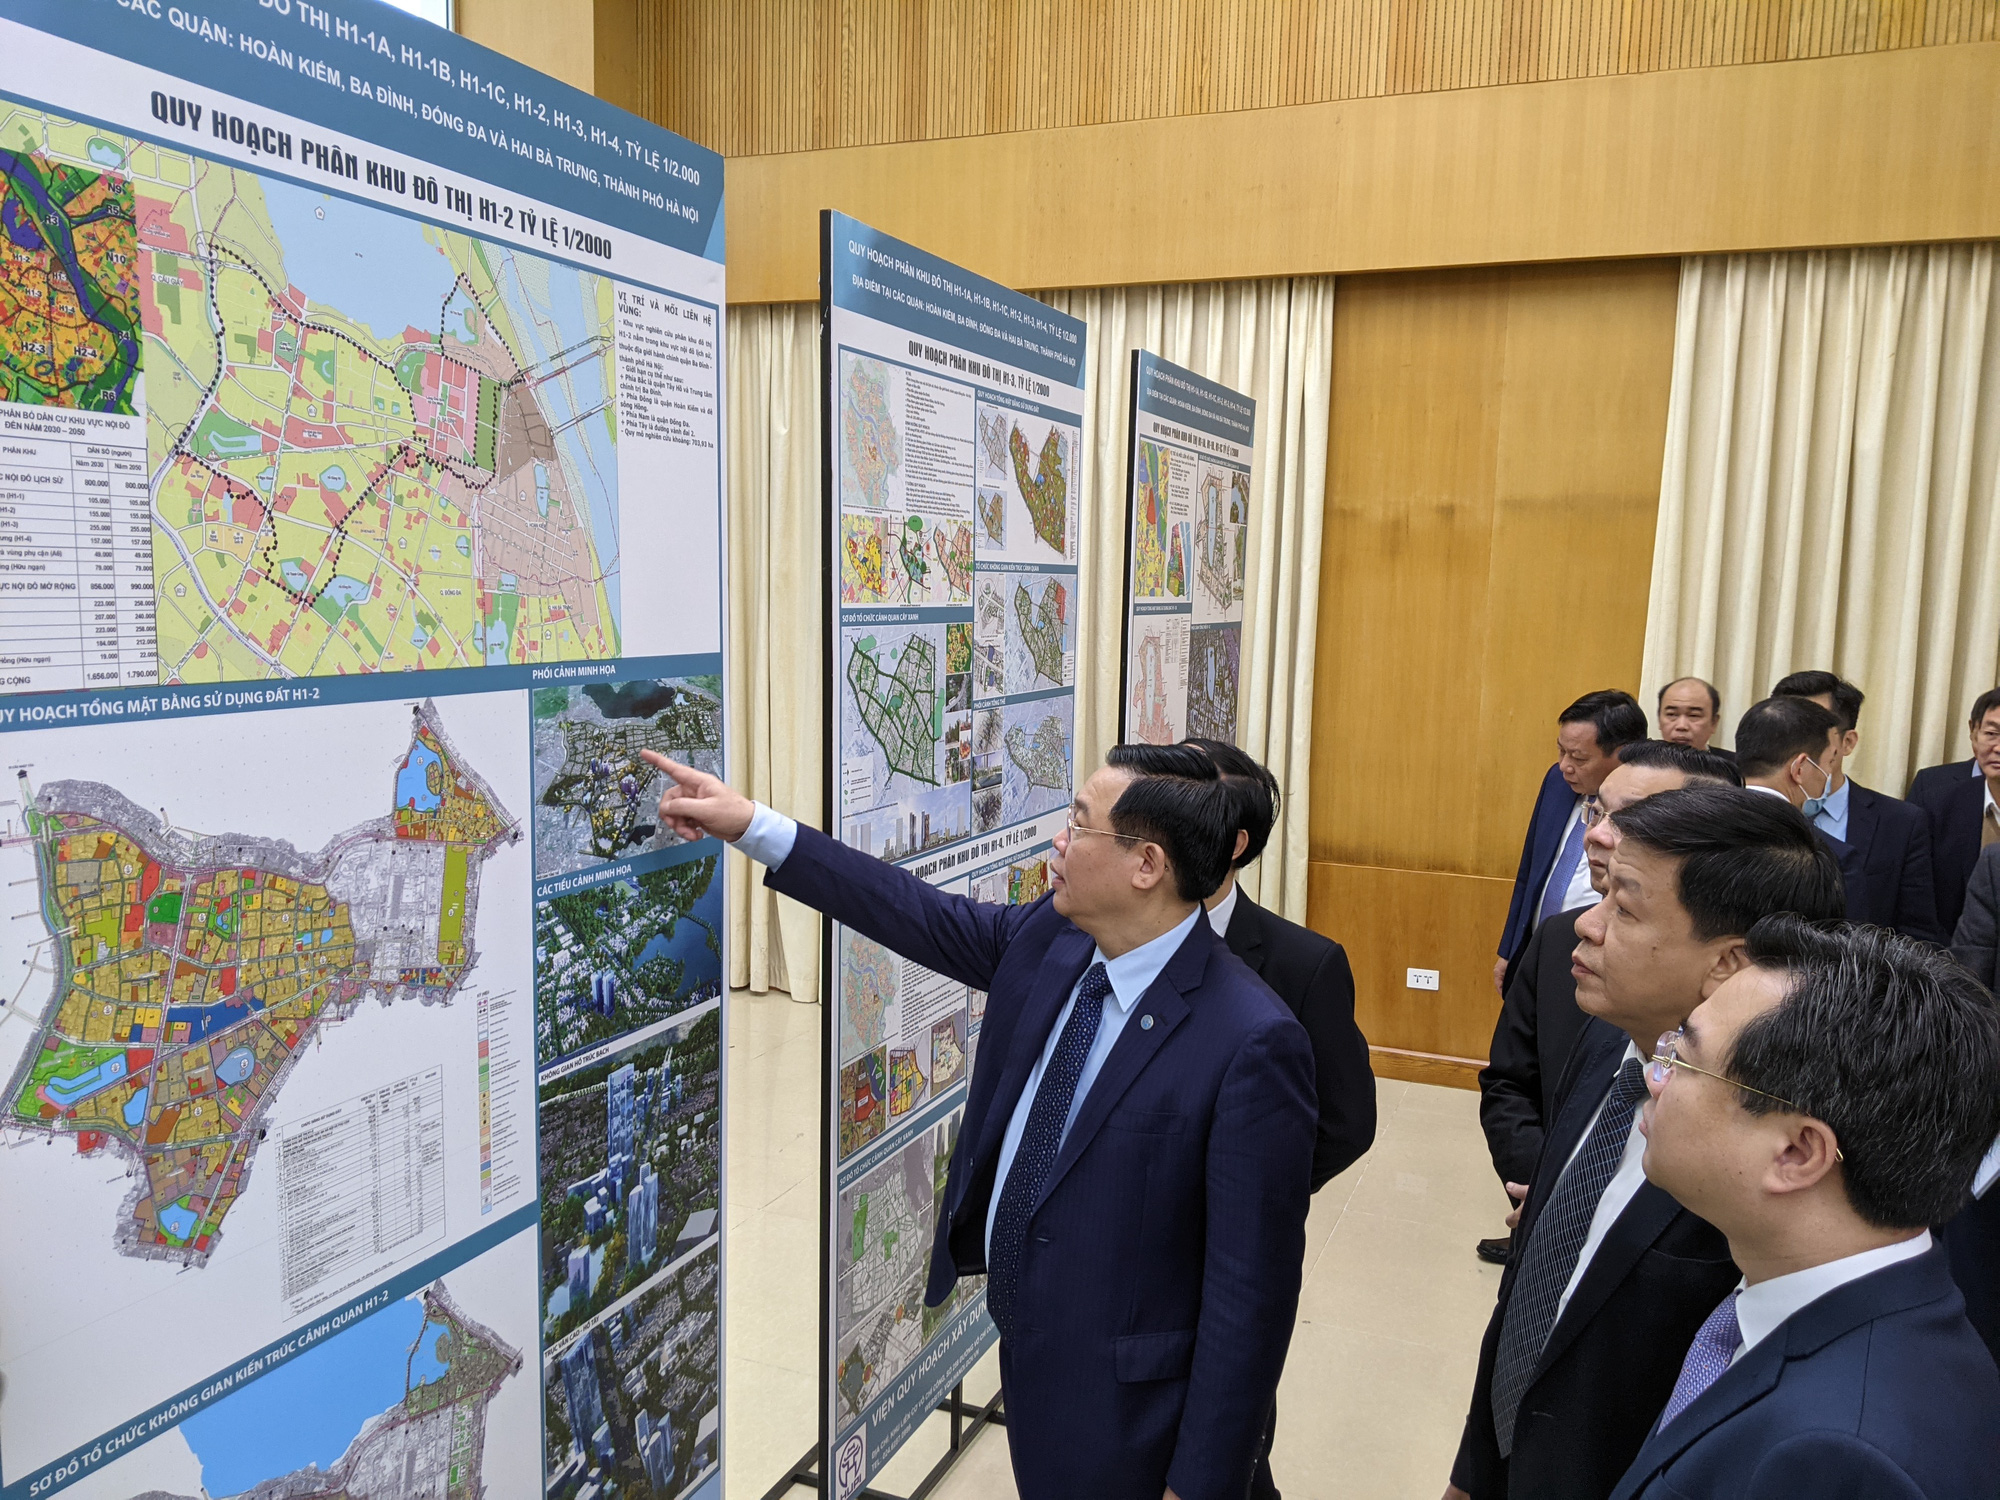 Năm 2024, quy hoạch 4 quận nội đô lịch sử Hà Nội sẽ được đẩy nhanh tiến độ triển khai. Nhờ đó, người dân và du khách có thể dễ dàng tìm hiểu và thưởng ngoạn những di sản văn hóa quý giá của đất nước mình.